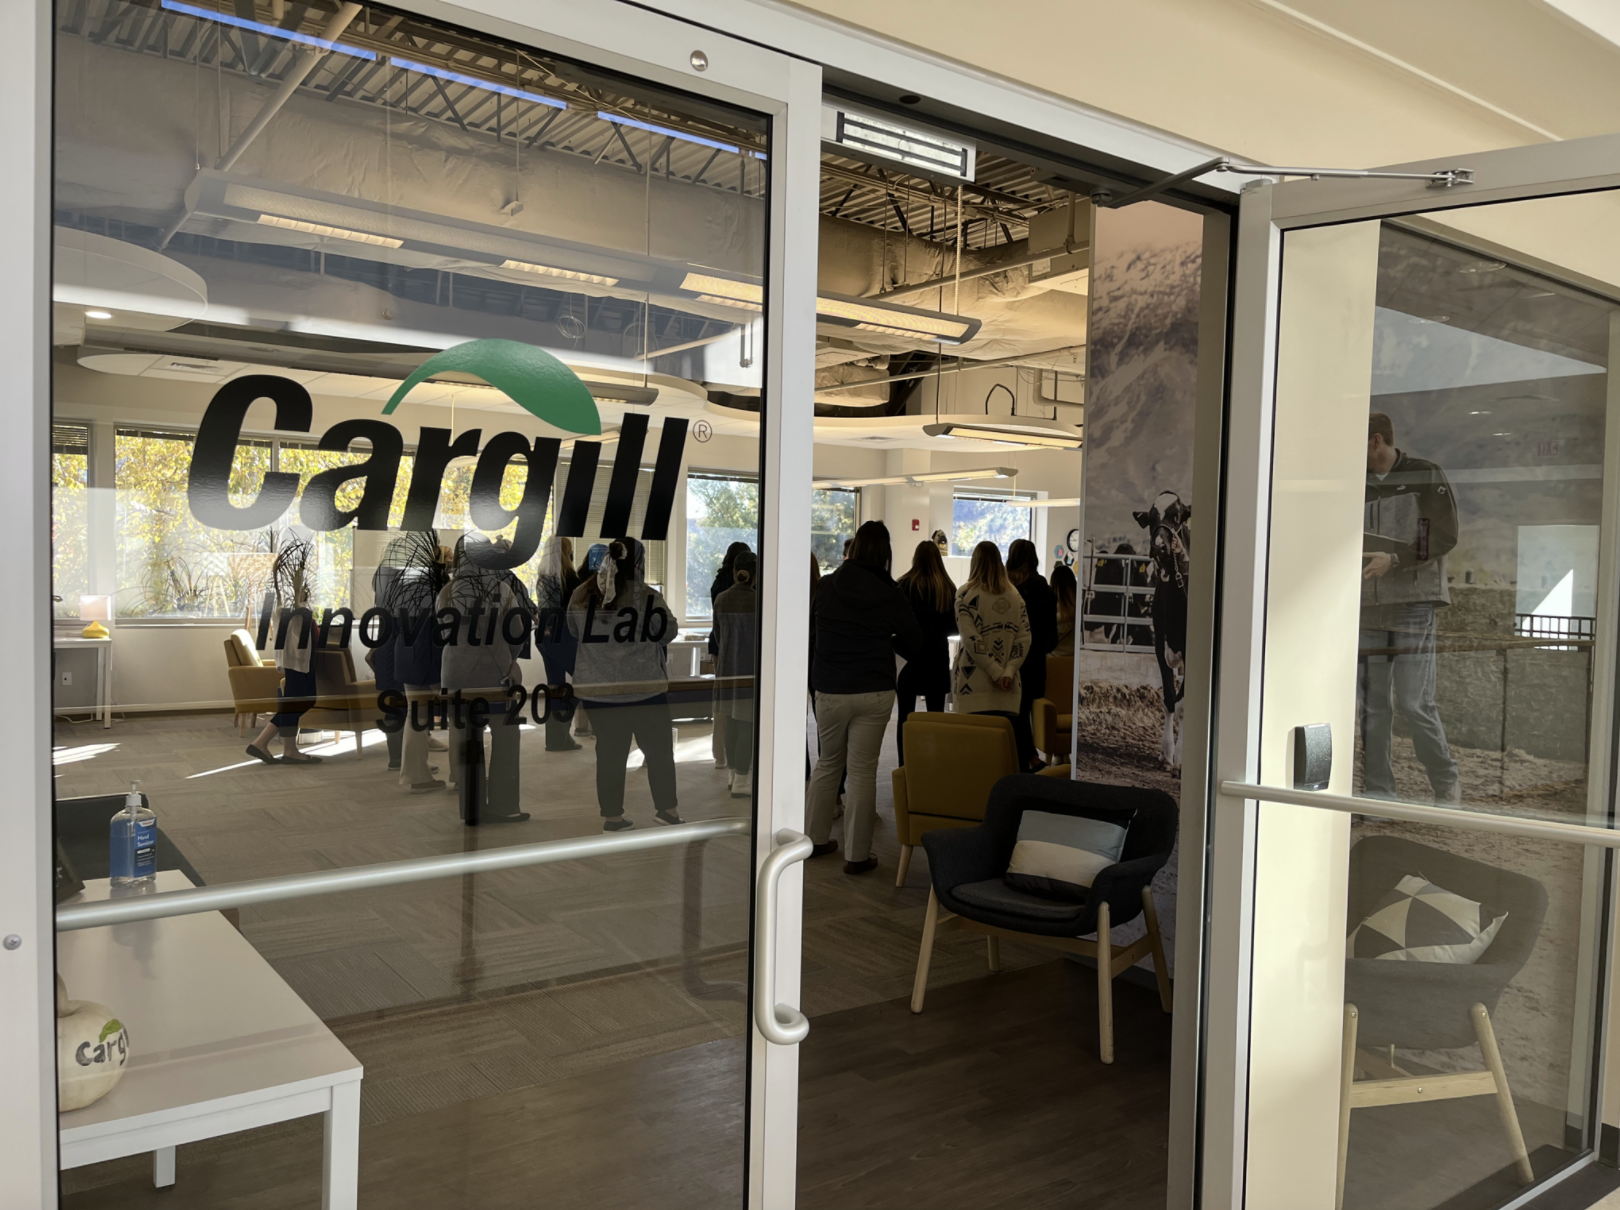 Cargill Innovation Lab.